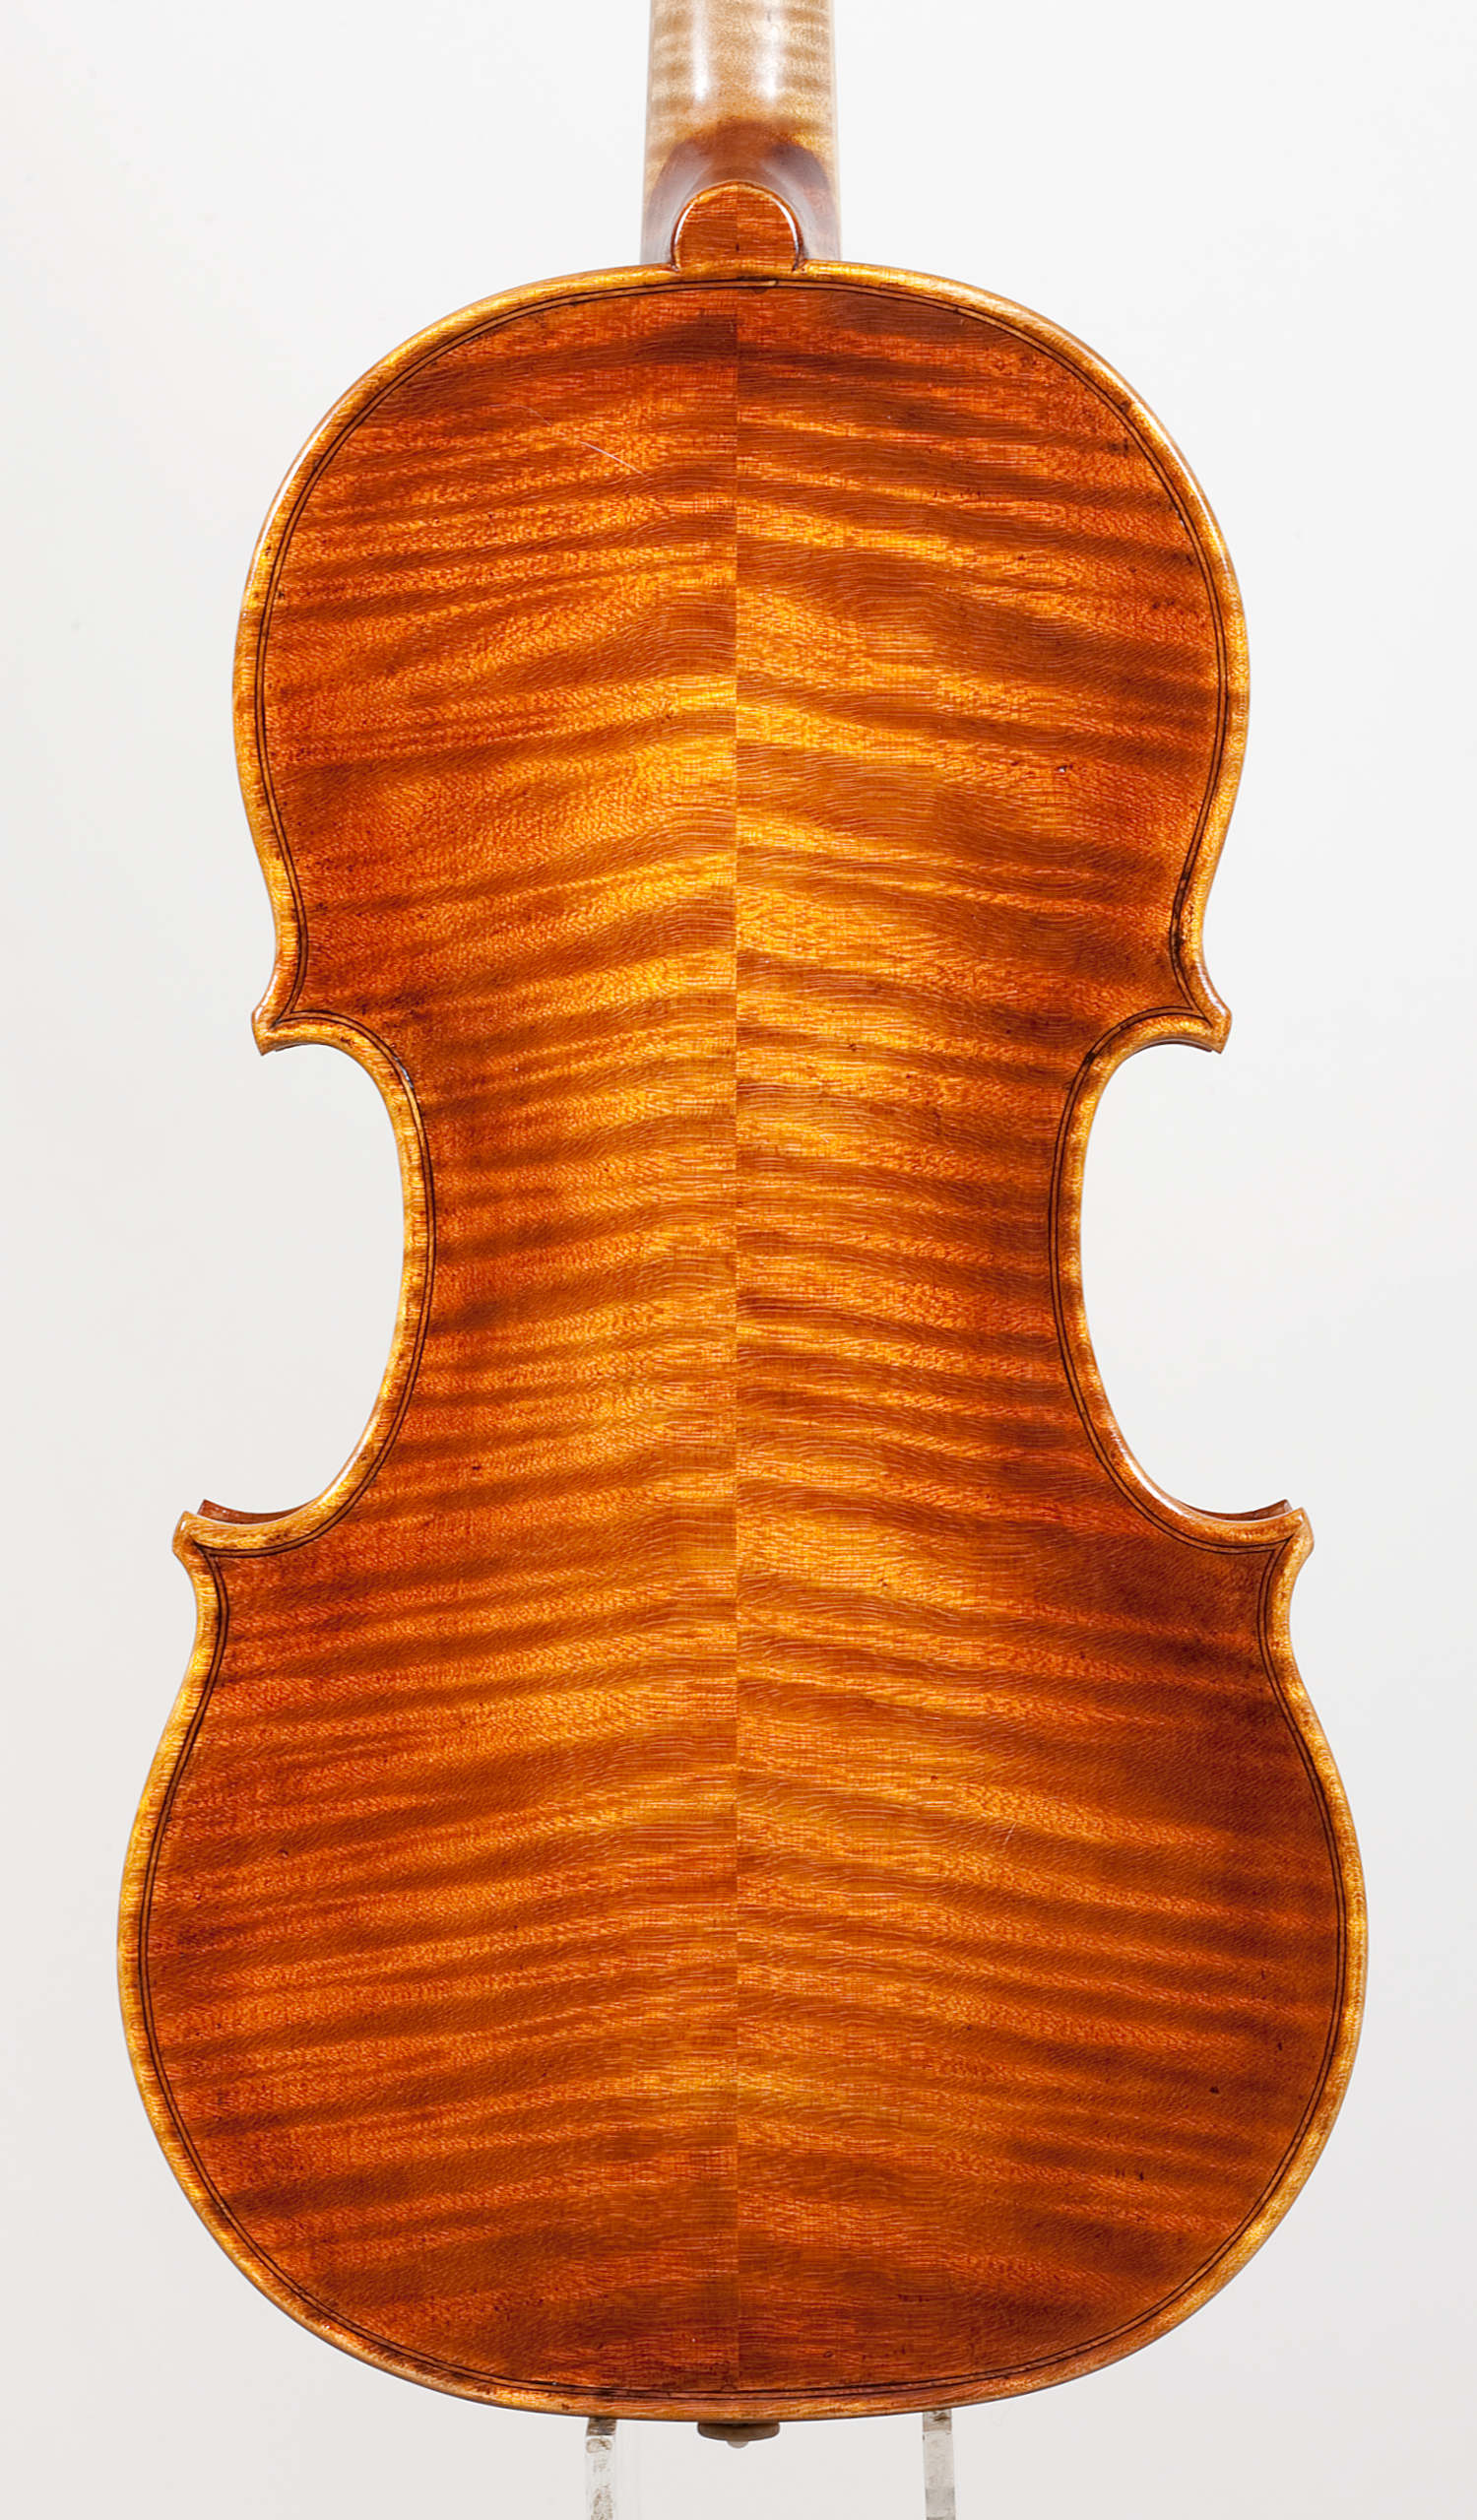 violino-barocco-modello-stradivari-di-davide-belosio-2001-dettaglio-fondo.jpeg